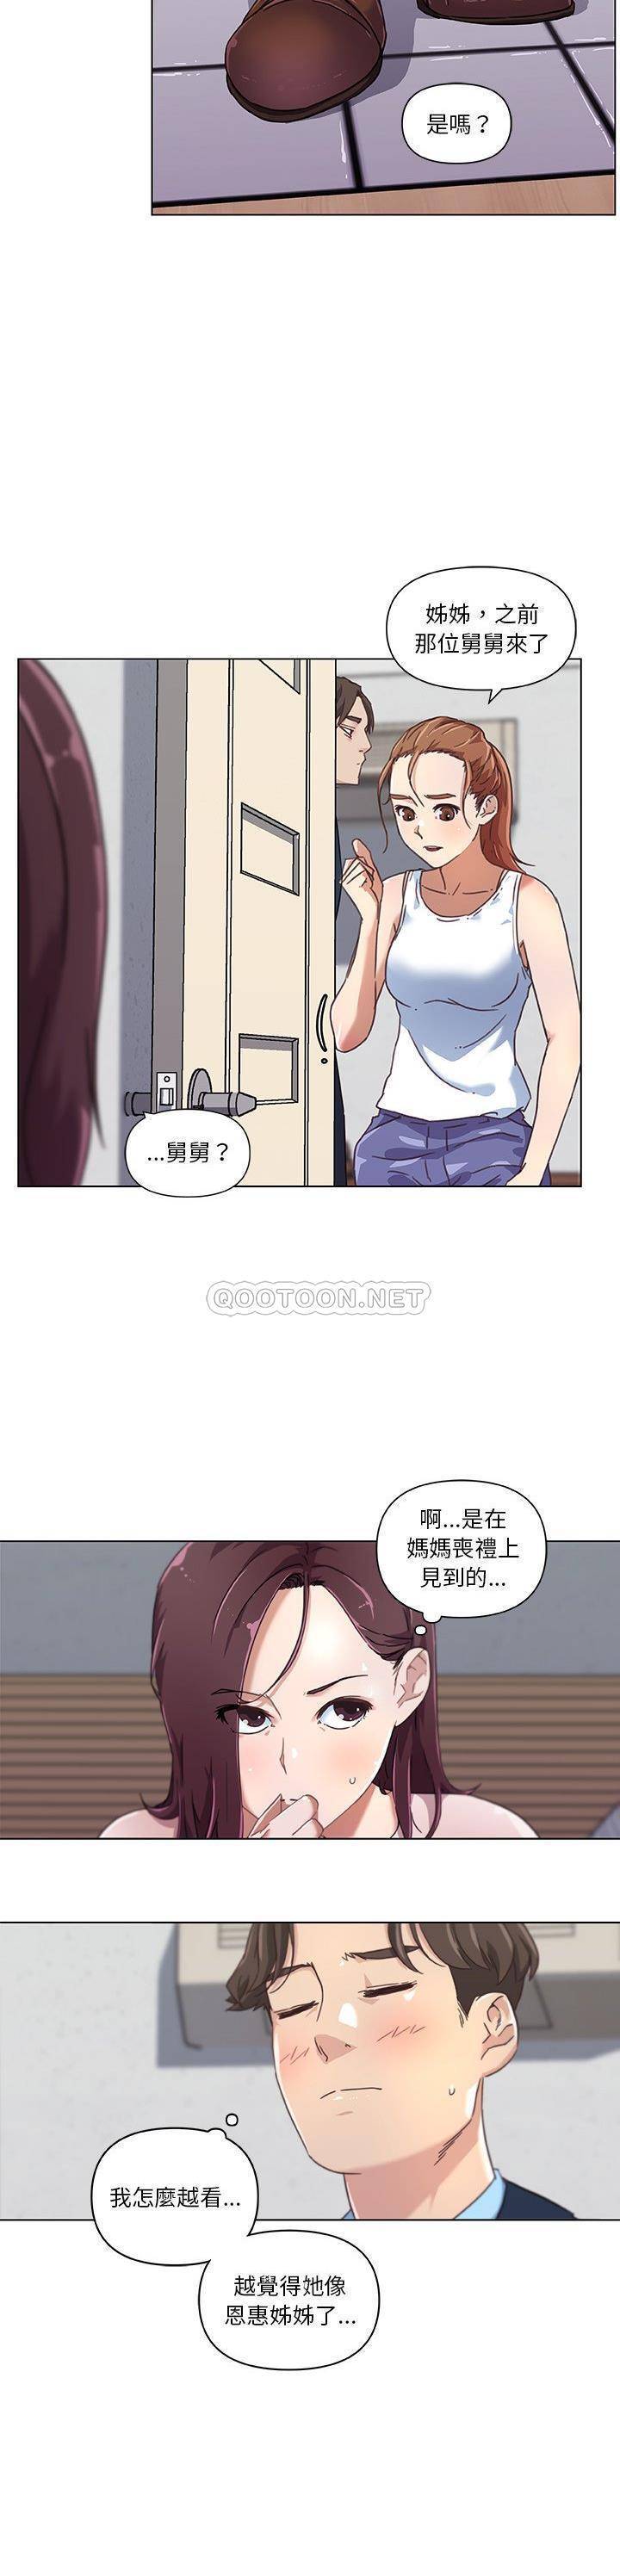 韩国污漫画 神似初戀的她 第8话 6